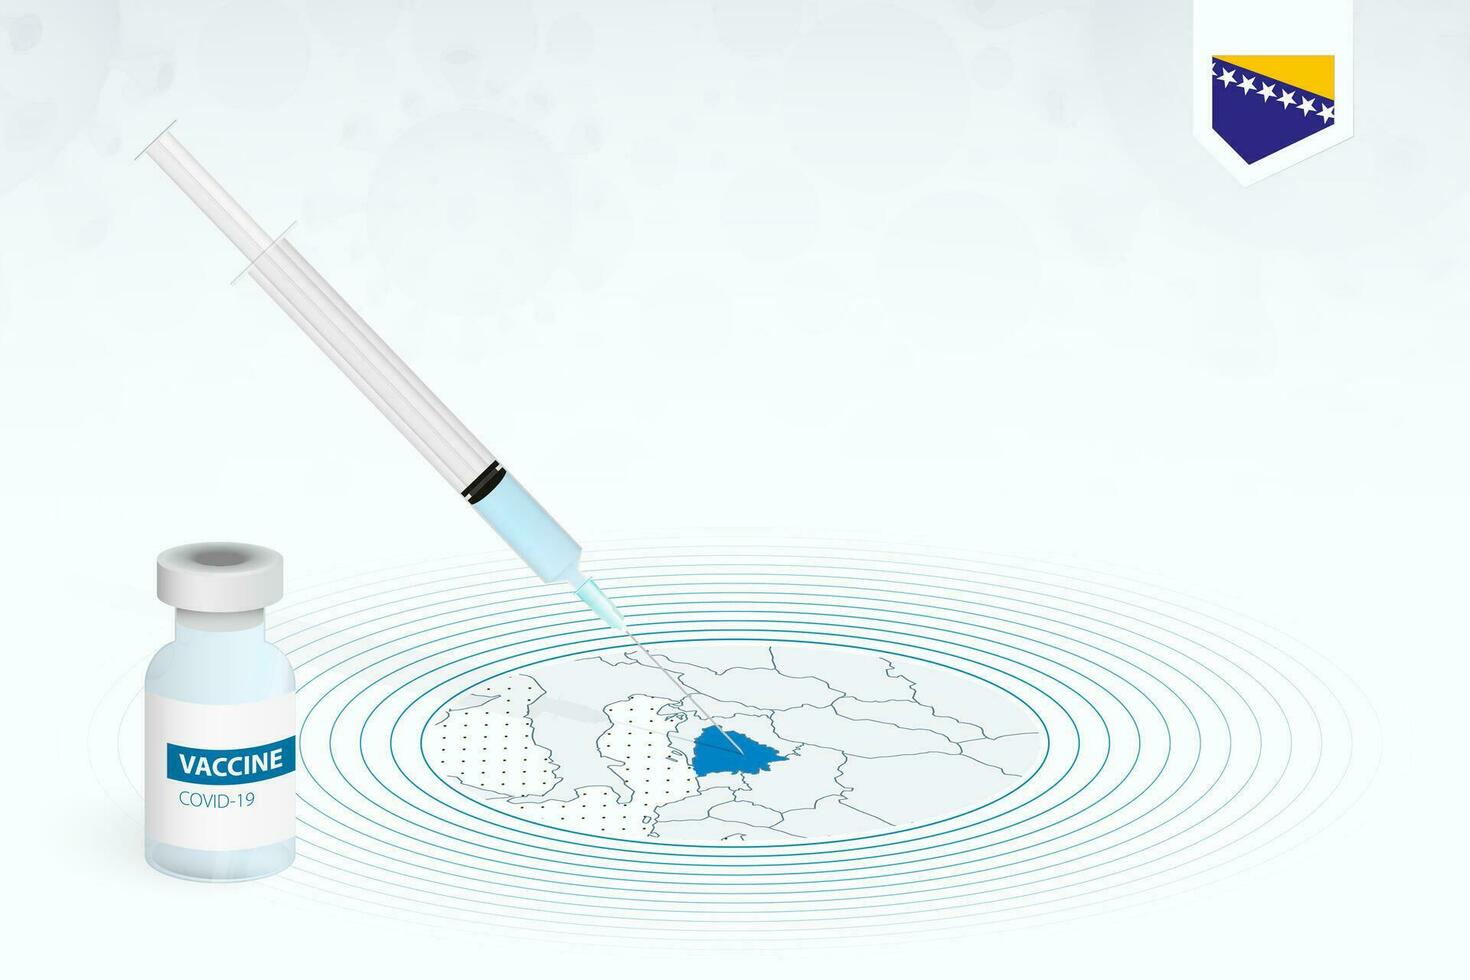 covid-19 vacunación en bosnia y herzegovina, coronavirus vacunación ilustración con vacuna botella y jeringuilla inyección en mapa de bosnia y herzegovina vector